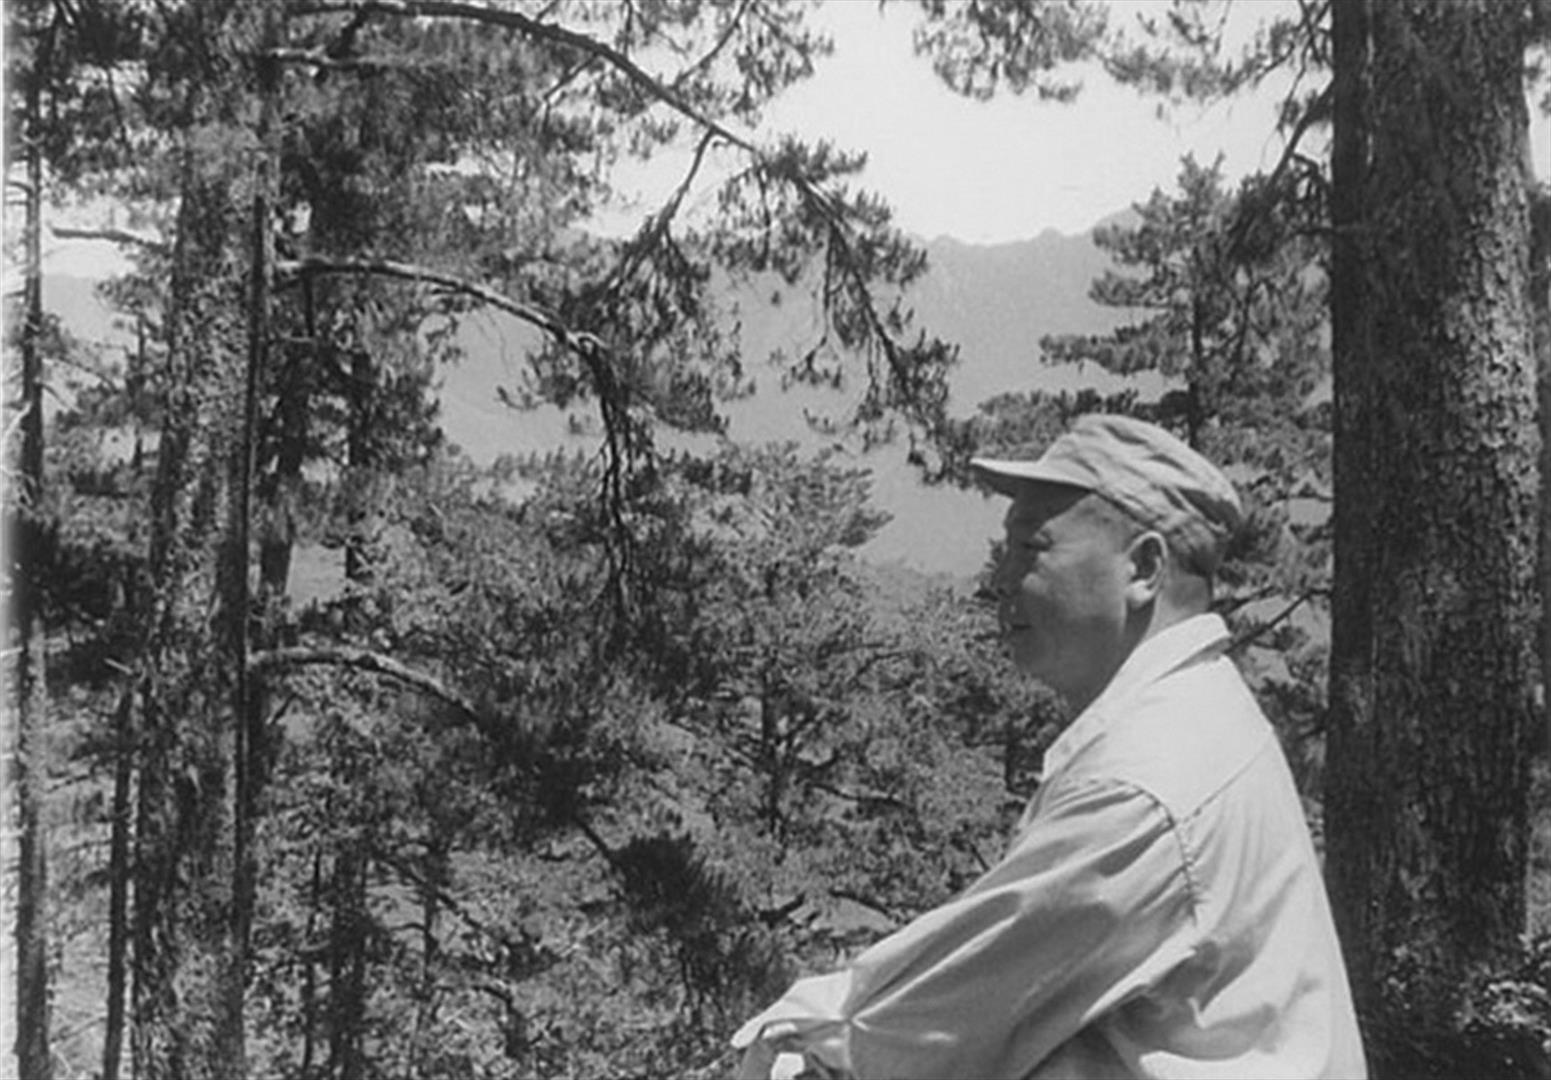 民國45年6月29日「中部橫貫公路」勘察行程，輔導會代主任委員經國先生背後的山稜線，就是立霧溪上源的南湖大山